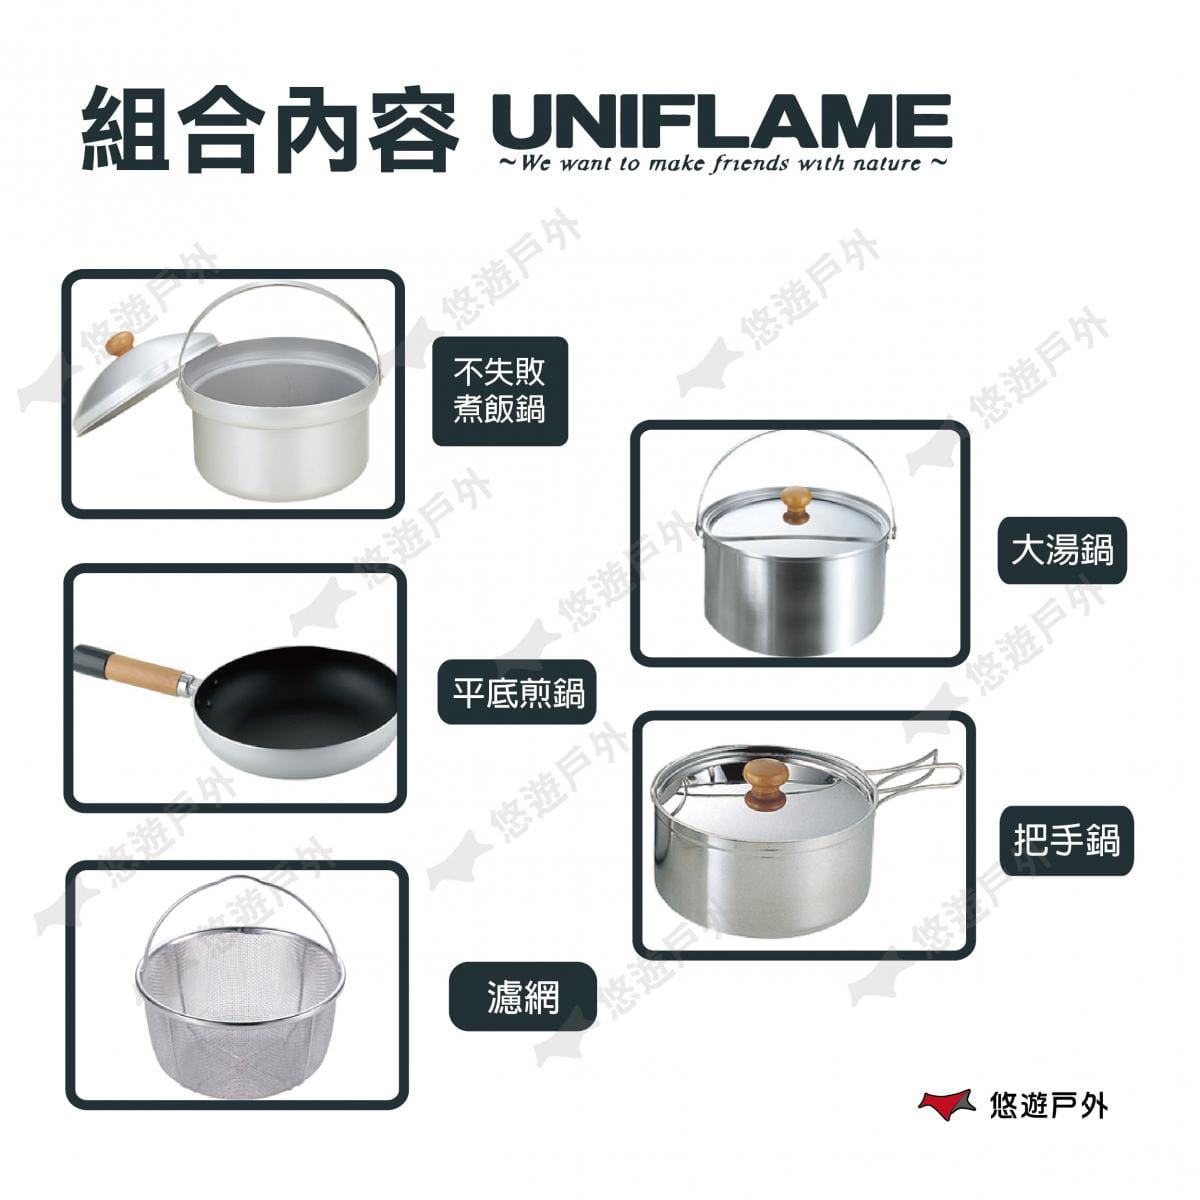 【悠遊戶外】UNIFLAME FAN5 DX不鏽鋼鍋具組 1